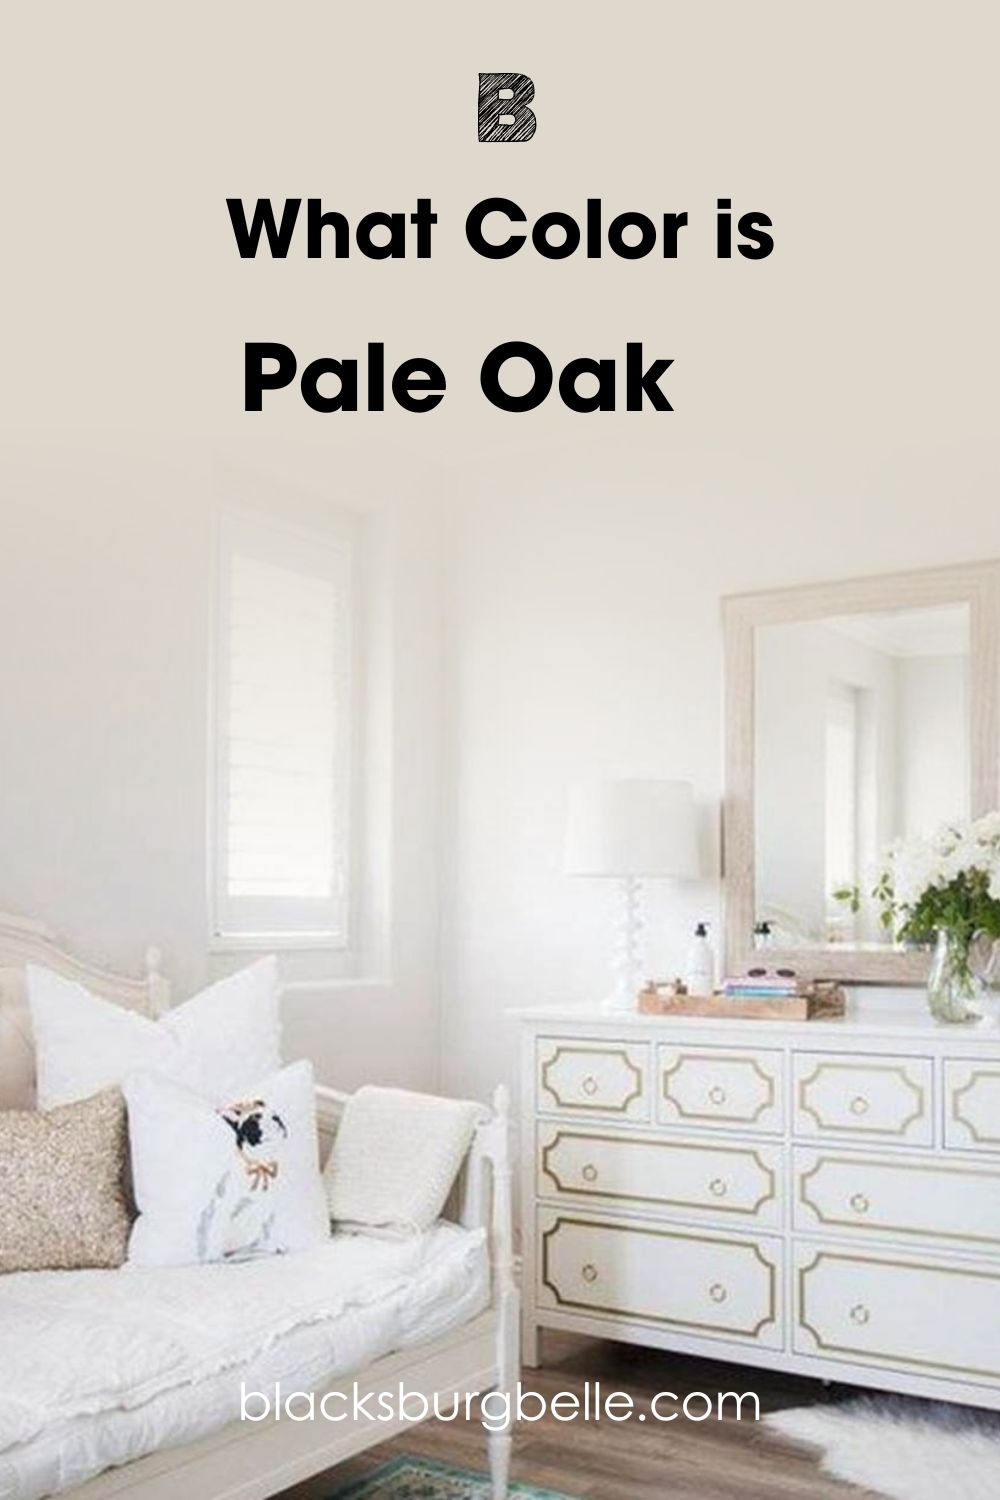 Pale Oak